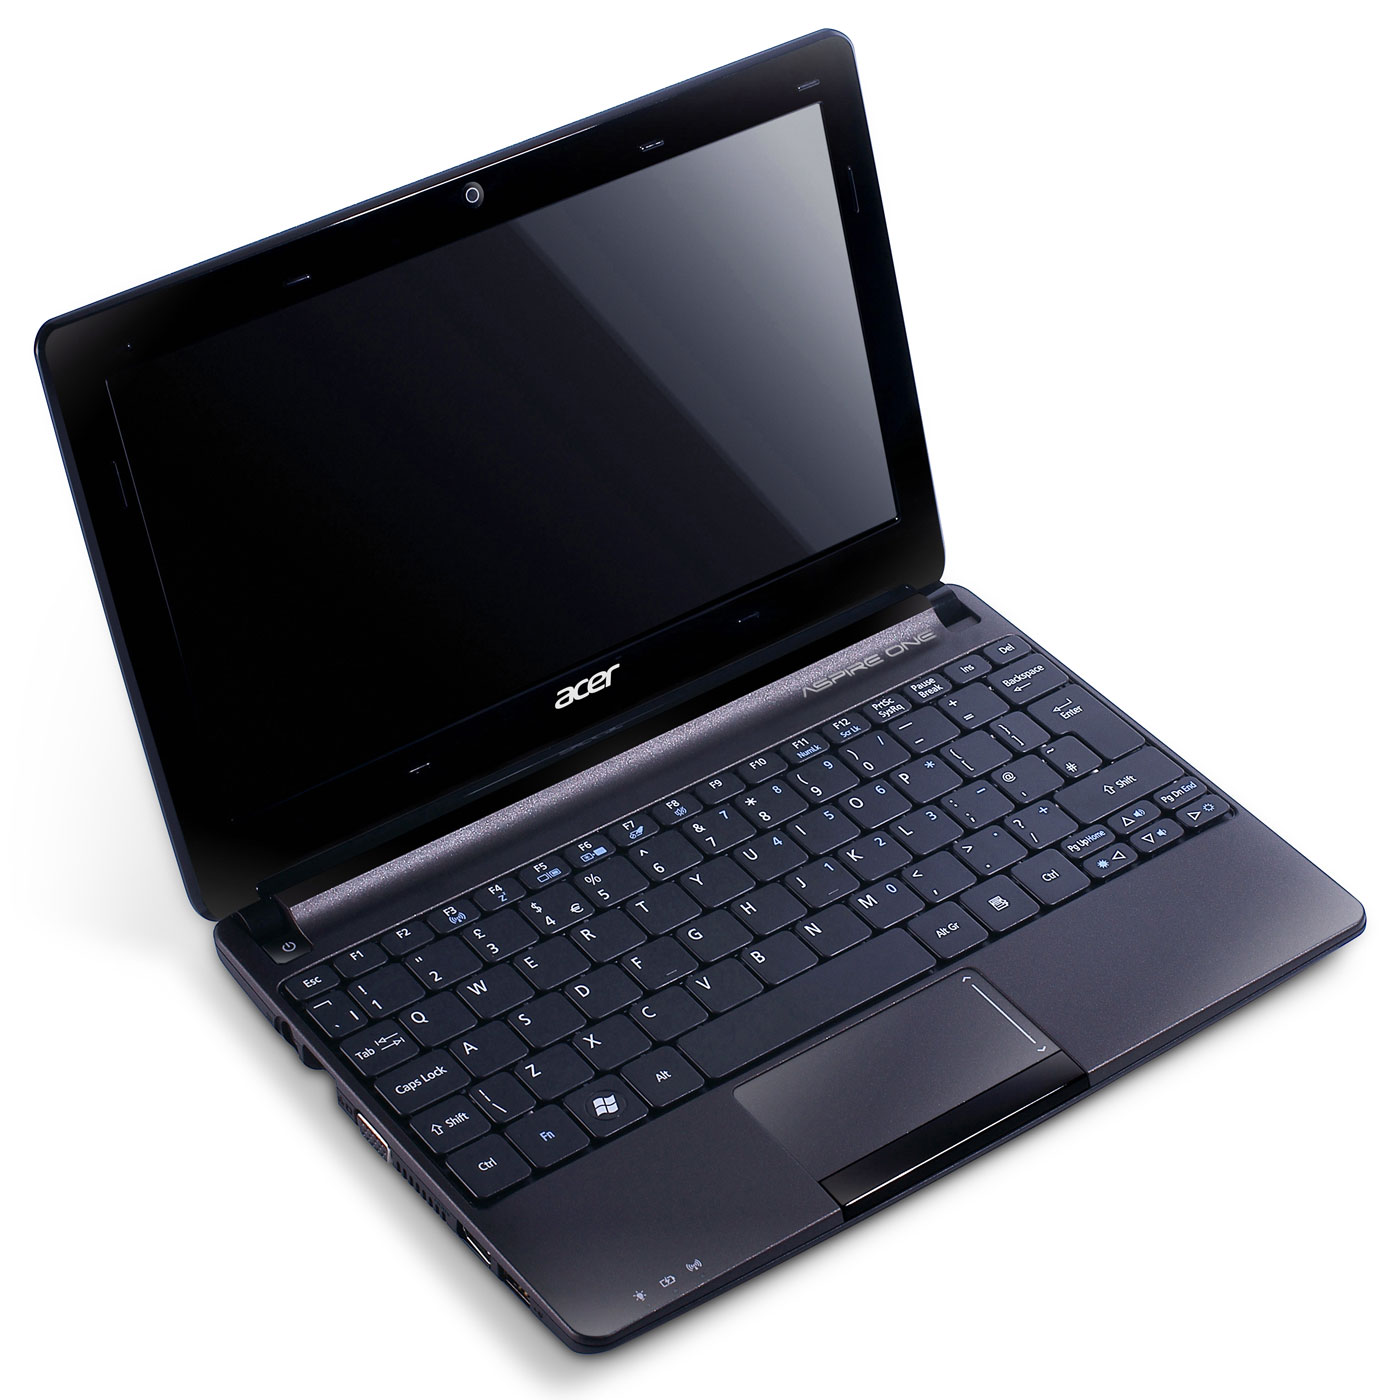 Acer Aspire One D270 Noir - LDLC.com Acer sur LDLC.com